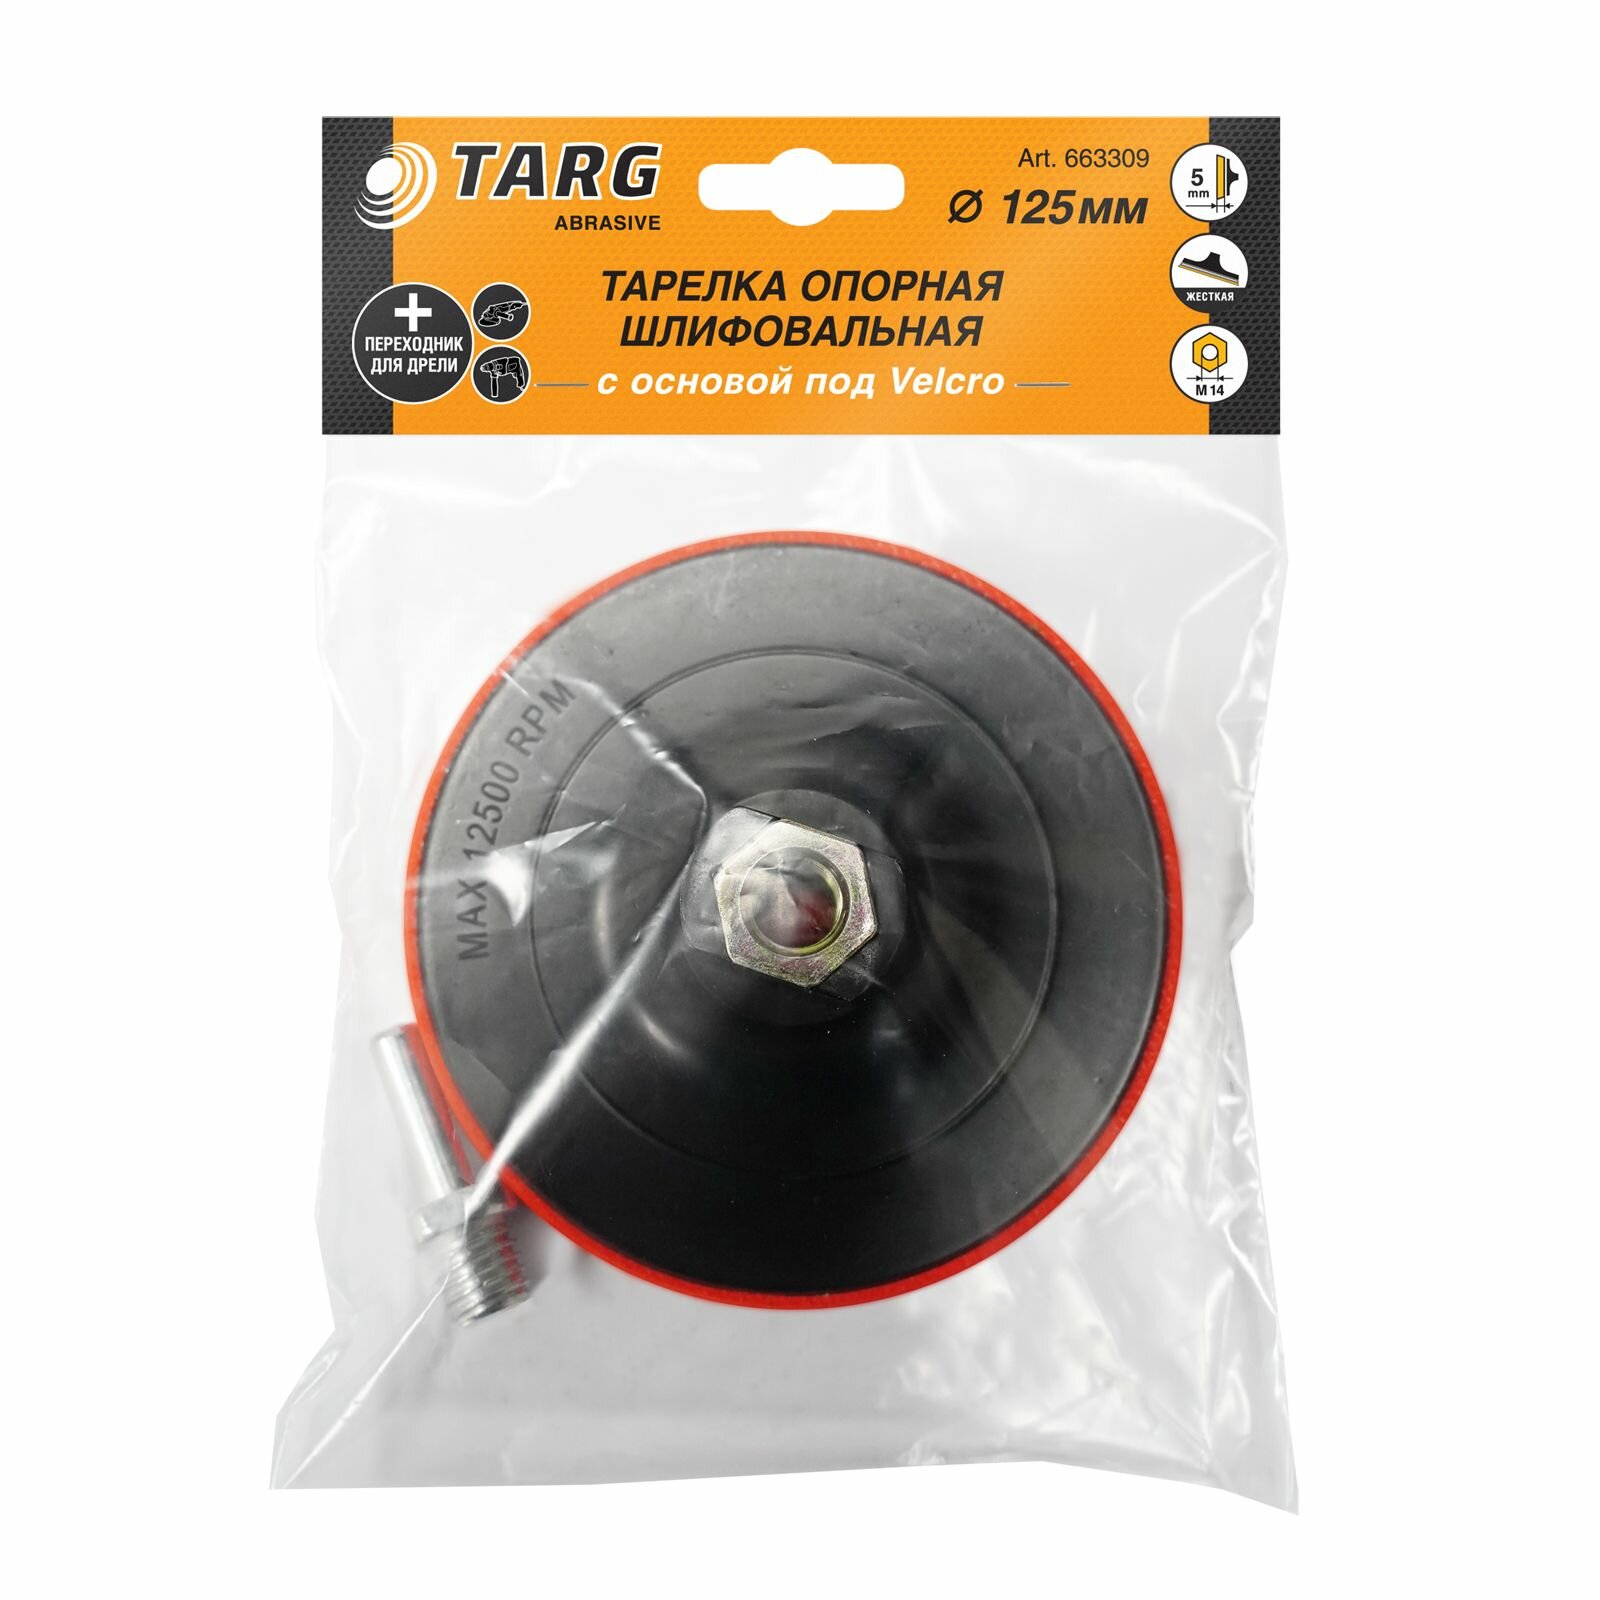 Targ Тарелка тонкая опорная шлифовальная 125мм c основой под velcro с гайкой м14 на ушм и адаптером 663309